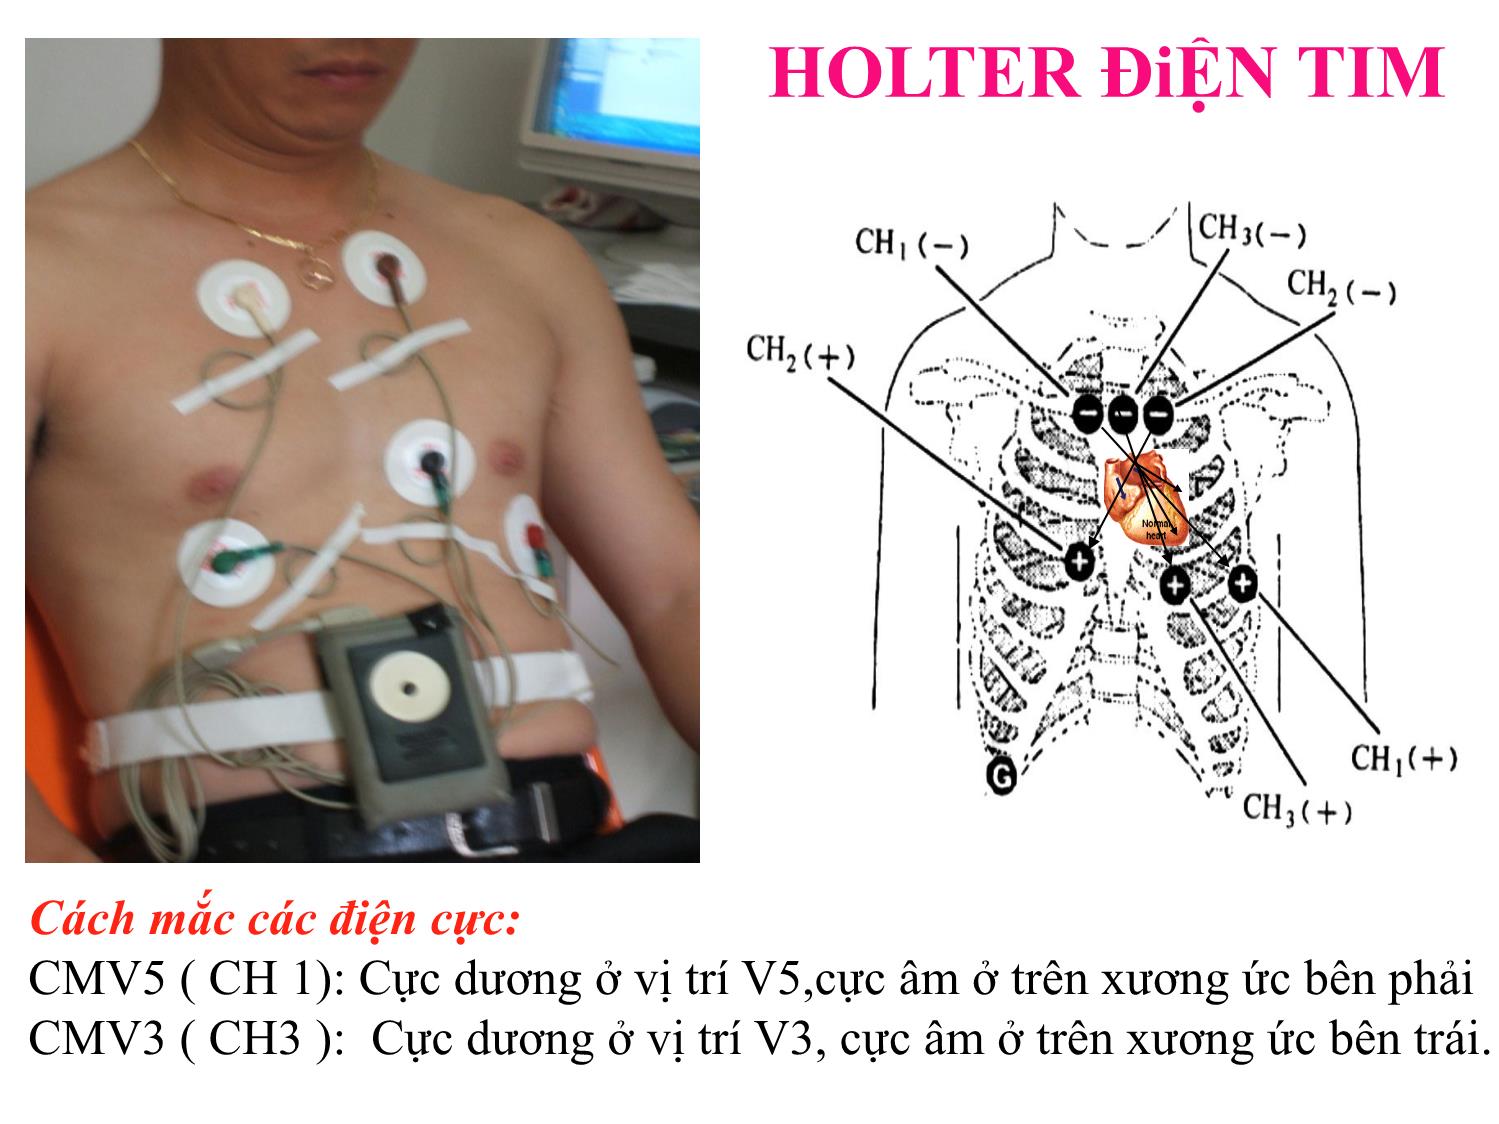 Rối loạn nhịp tim và biến thiên nhịp tim / holter điện tim 24 giờ ở bệnh nhân đái tháo đường týp 2 có biến chứng thận trang 9